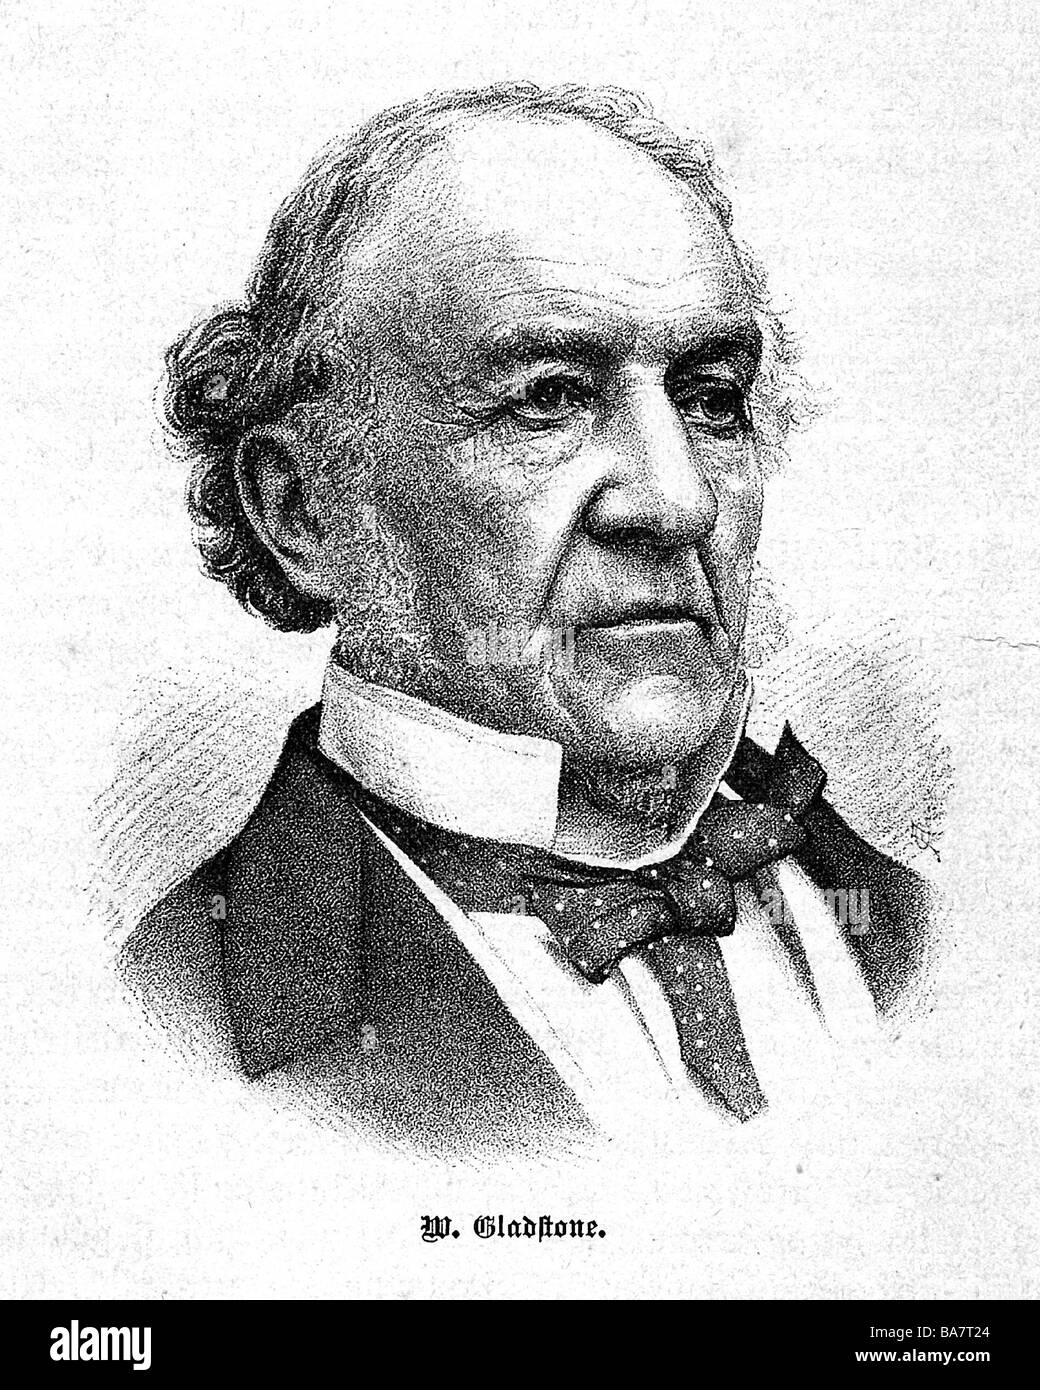 Gladstone, William Eward, 29.12.1809 - 19.5.1898, britischer Politiker (Lib.), Porträt, Holzgravur, Ende des 19. Jahrhunderts, Stockfoto